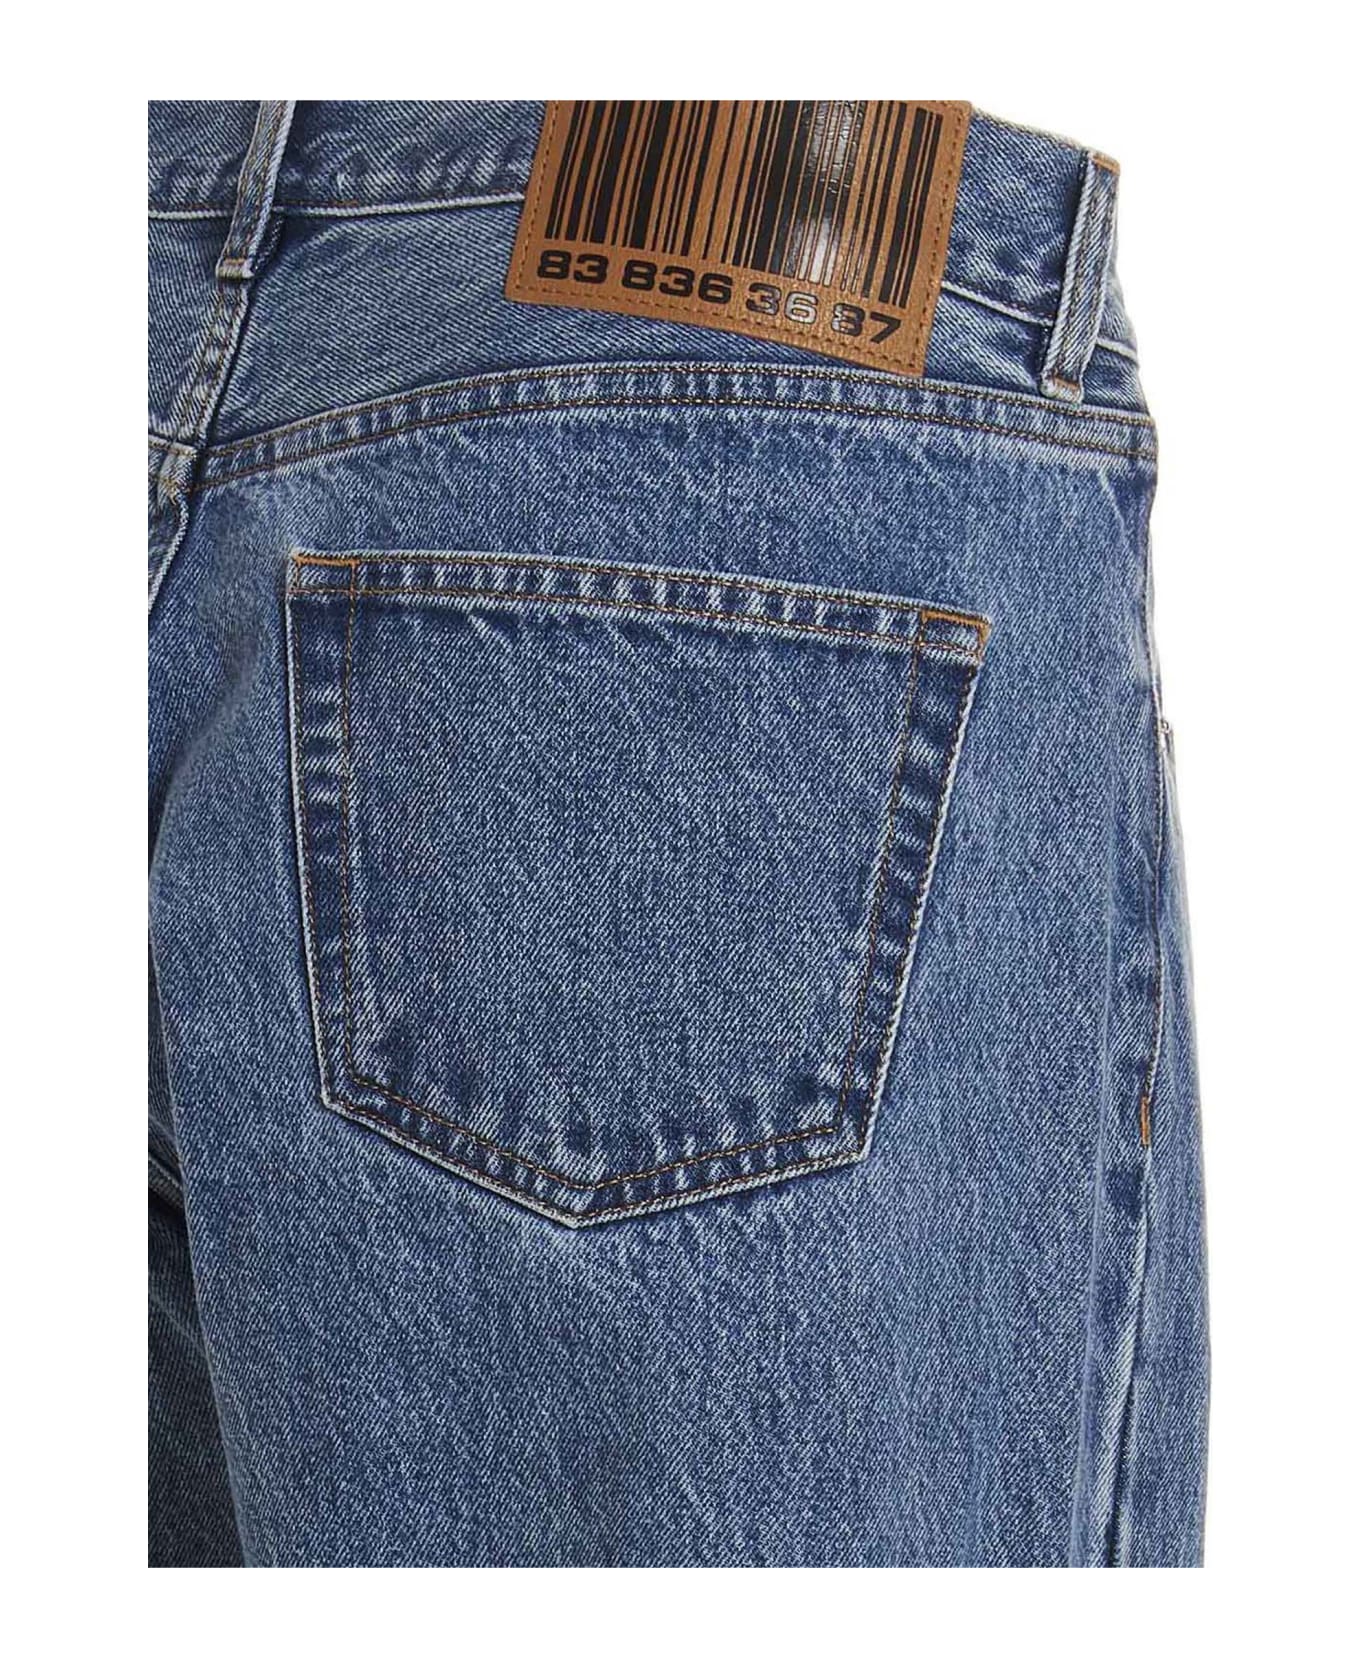 VTMNTS 5-pocket Jeans - DENIM BLUE